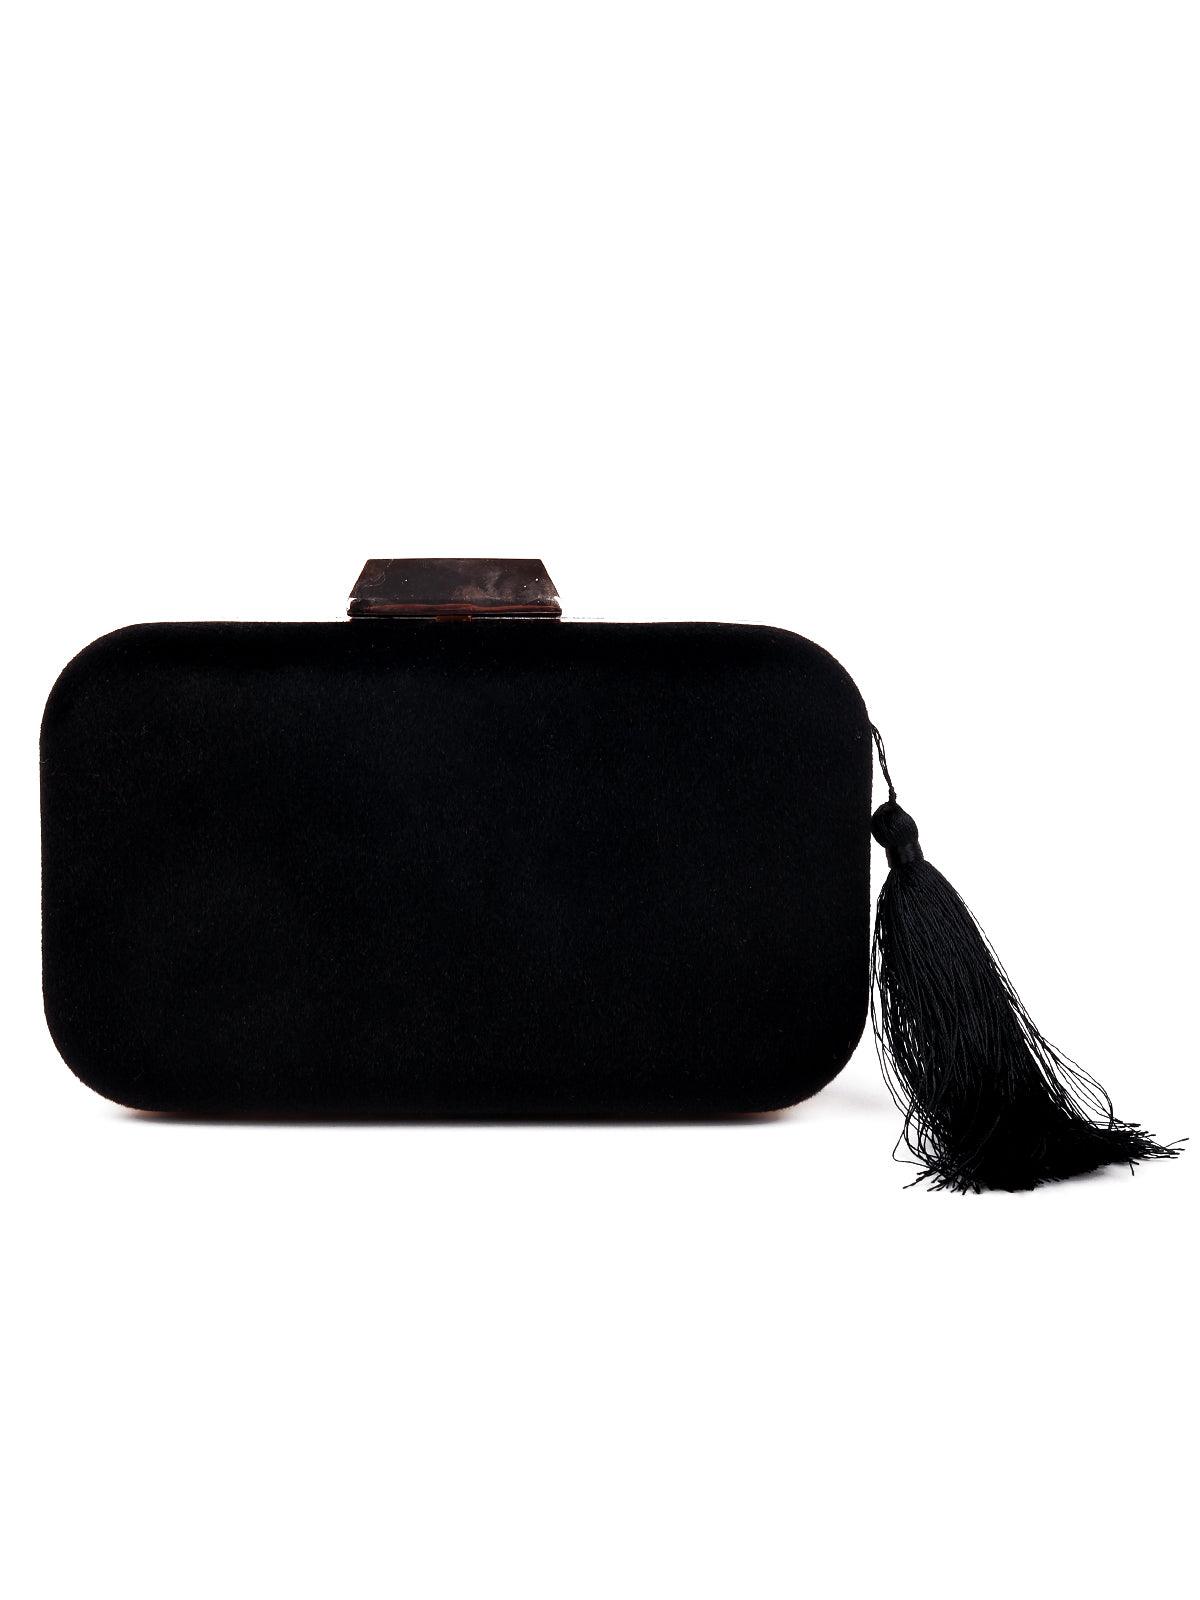 Gorgeous crips jet black oval-shaped sling/clutch bag - Odette